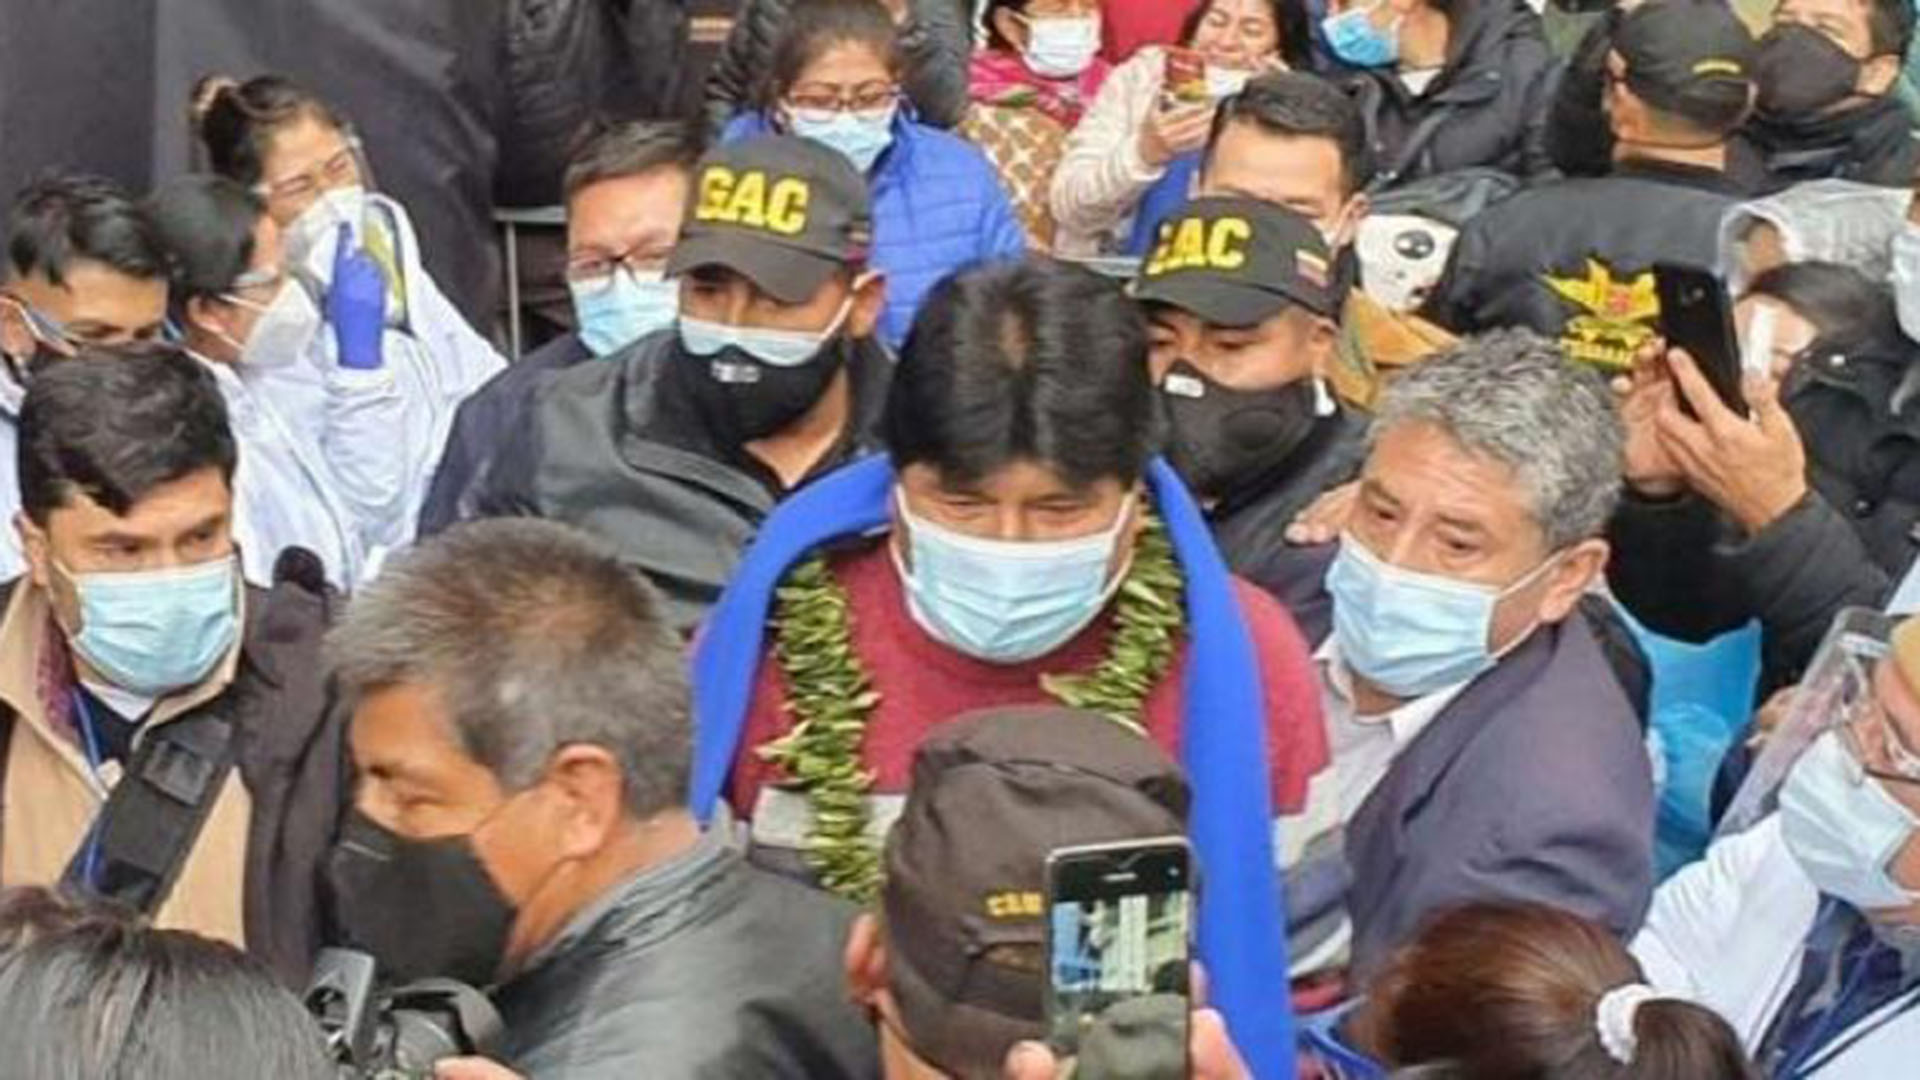 Evo Morales escoltado por guardias con insignias del GAC venezolano